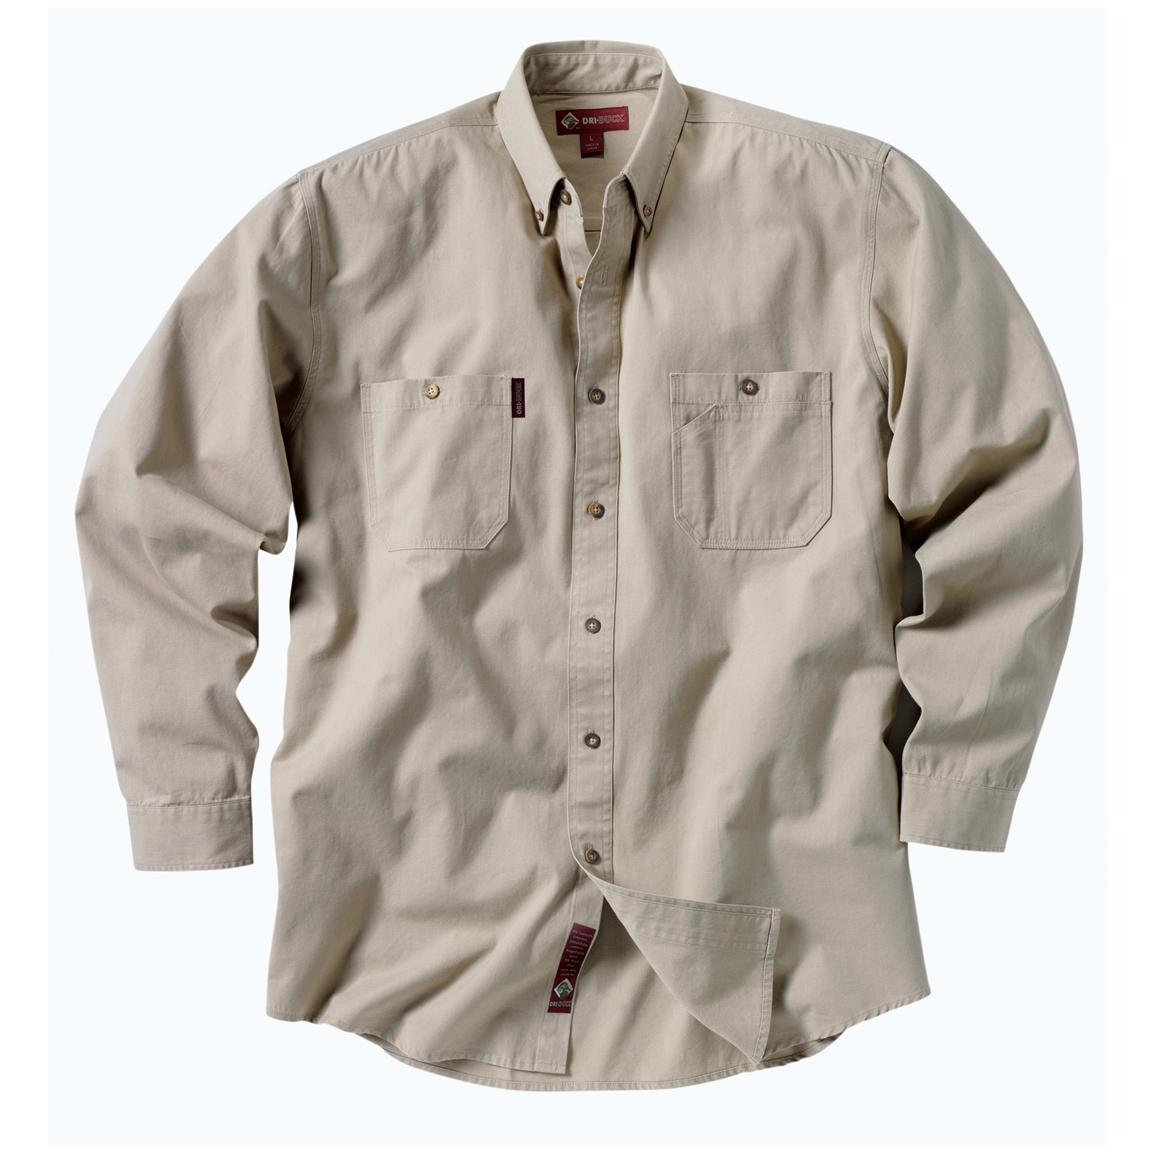 DRI DUCK Men's Brick Long - Sleeved Shirt - 154706, Shirts & Polos at ...